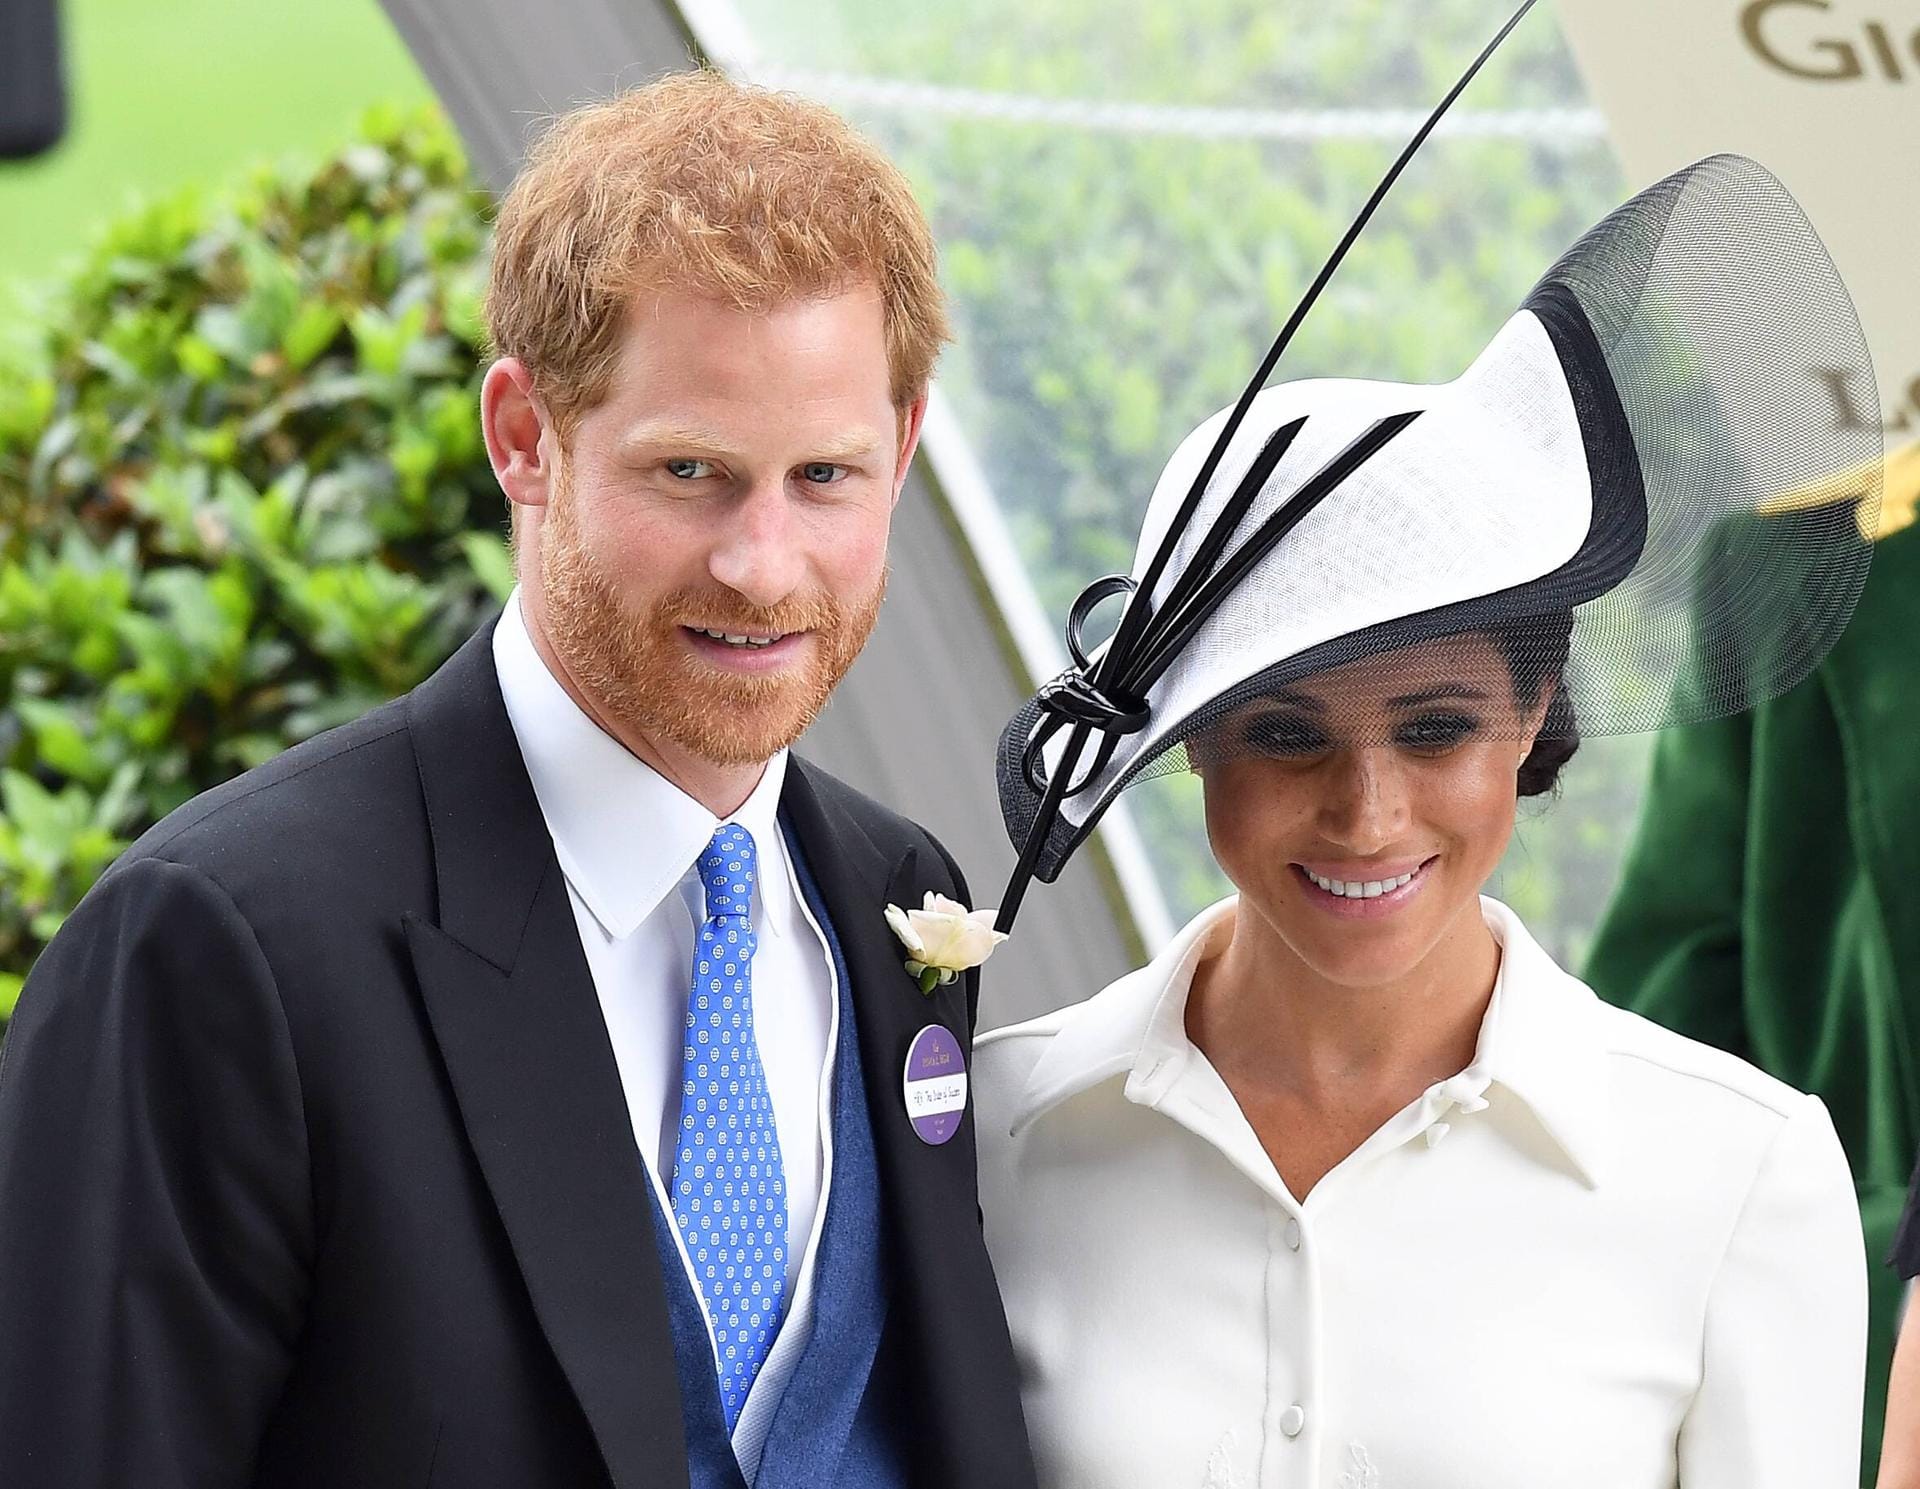 Royales Traumpaar: Genau einen Monat nach der Hochzeit mit Prinz Harry feierte Herzogin Meghan ihr Ascot-Debüt.